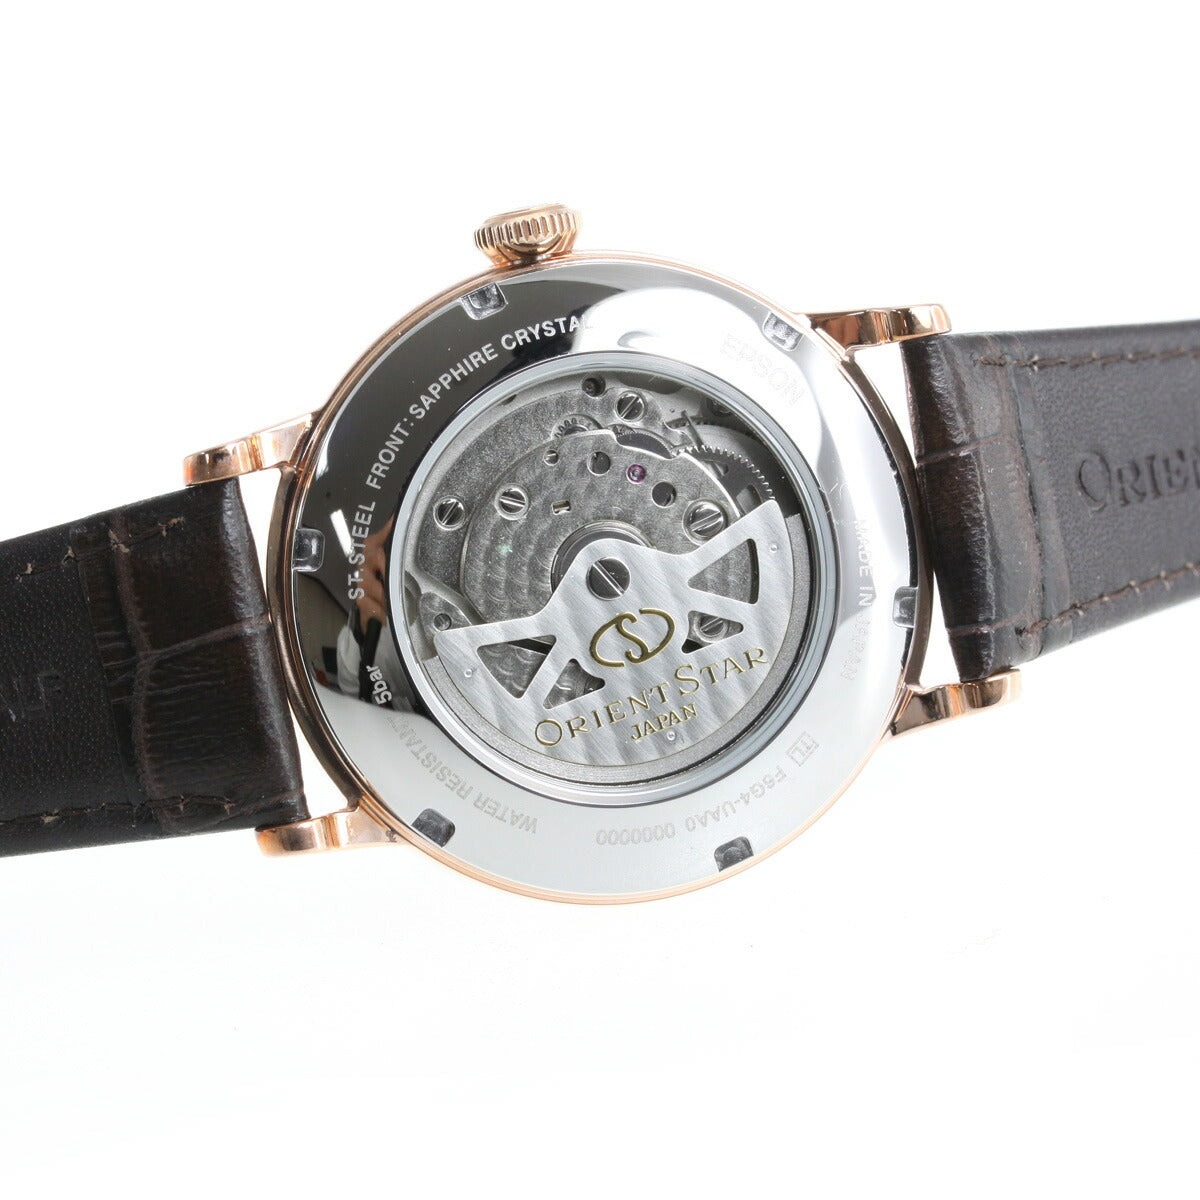 オリエントスター ORIENT STAR 腕時計 メンズ レディース 自動巻き 機械式 クラシック CLASSIC ヘリテージゴシック RK-AW0003S